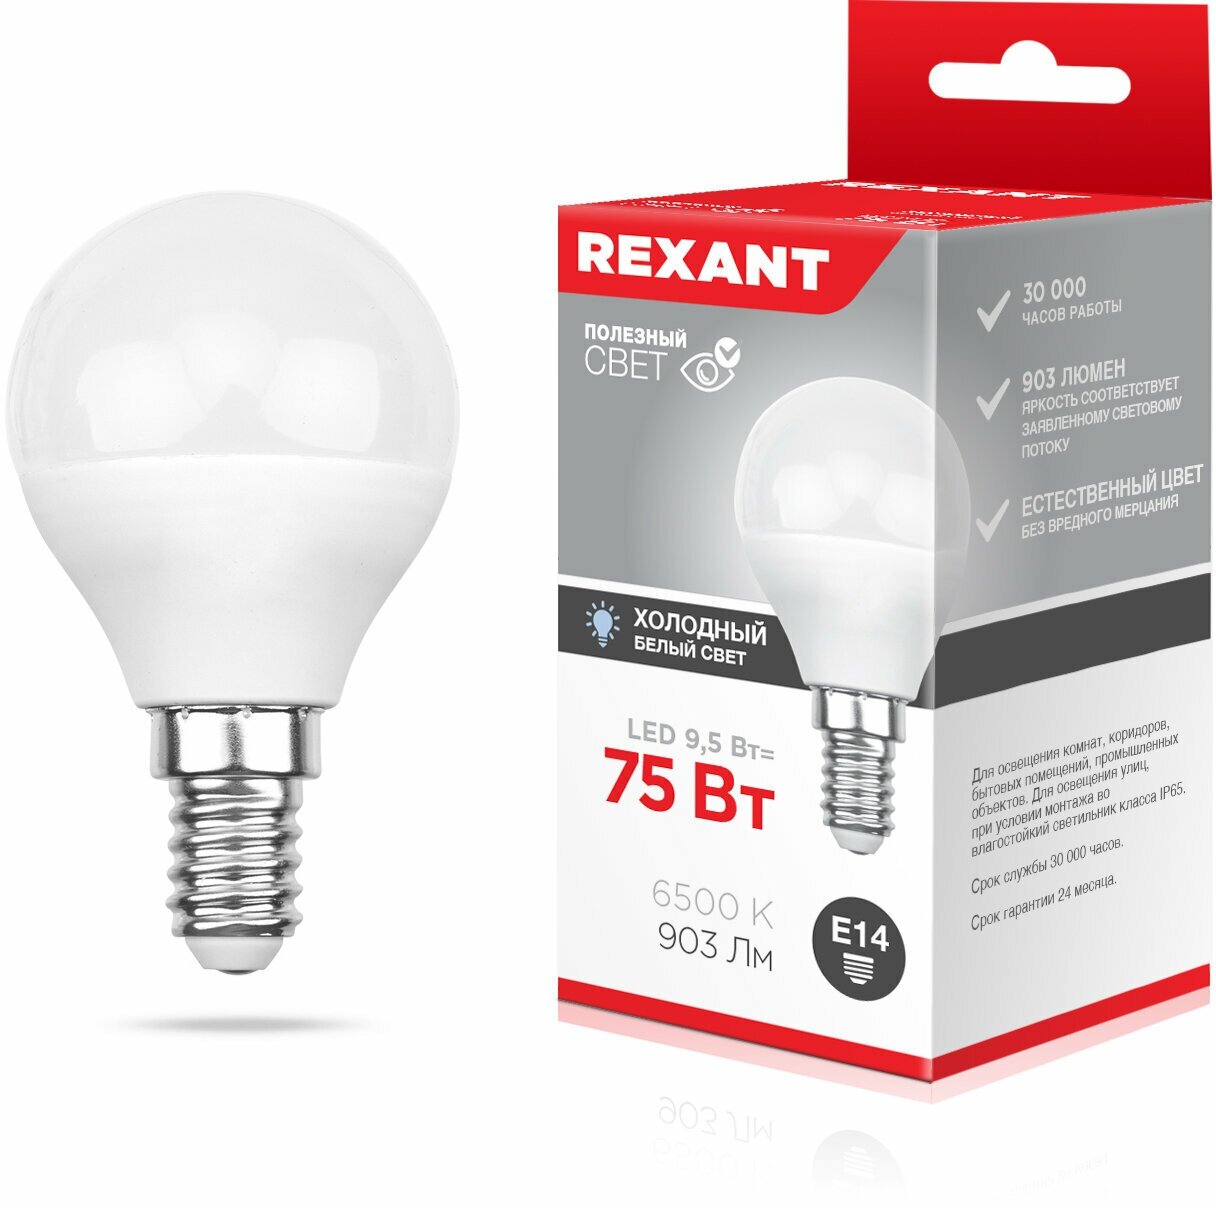 Светодиодная лампа REXANT Шарик (GL) 95 Вт E14 903 Лм 6500 K холодный свет